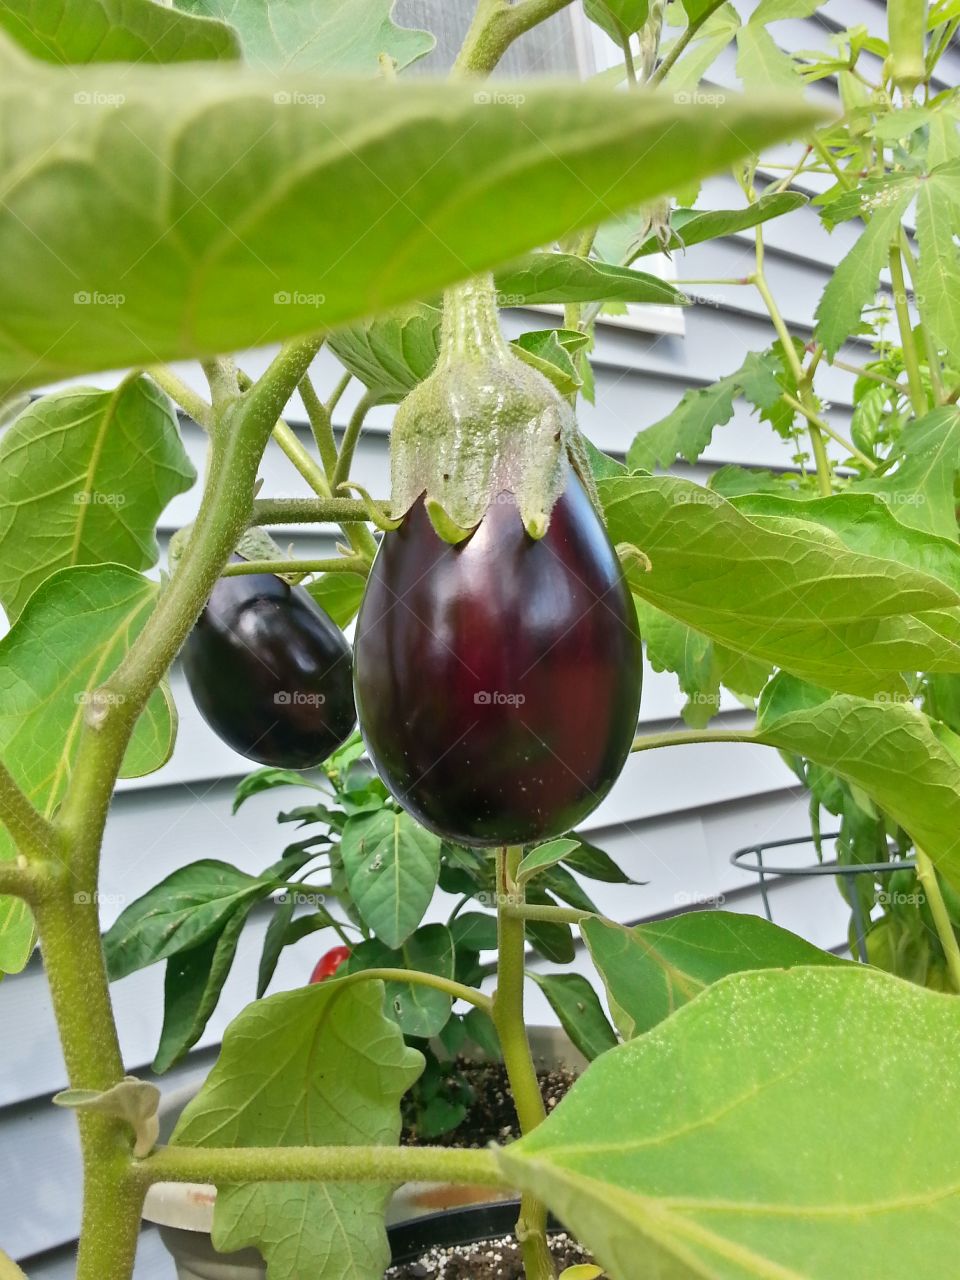 Eggplant#2